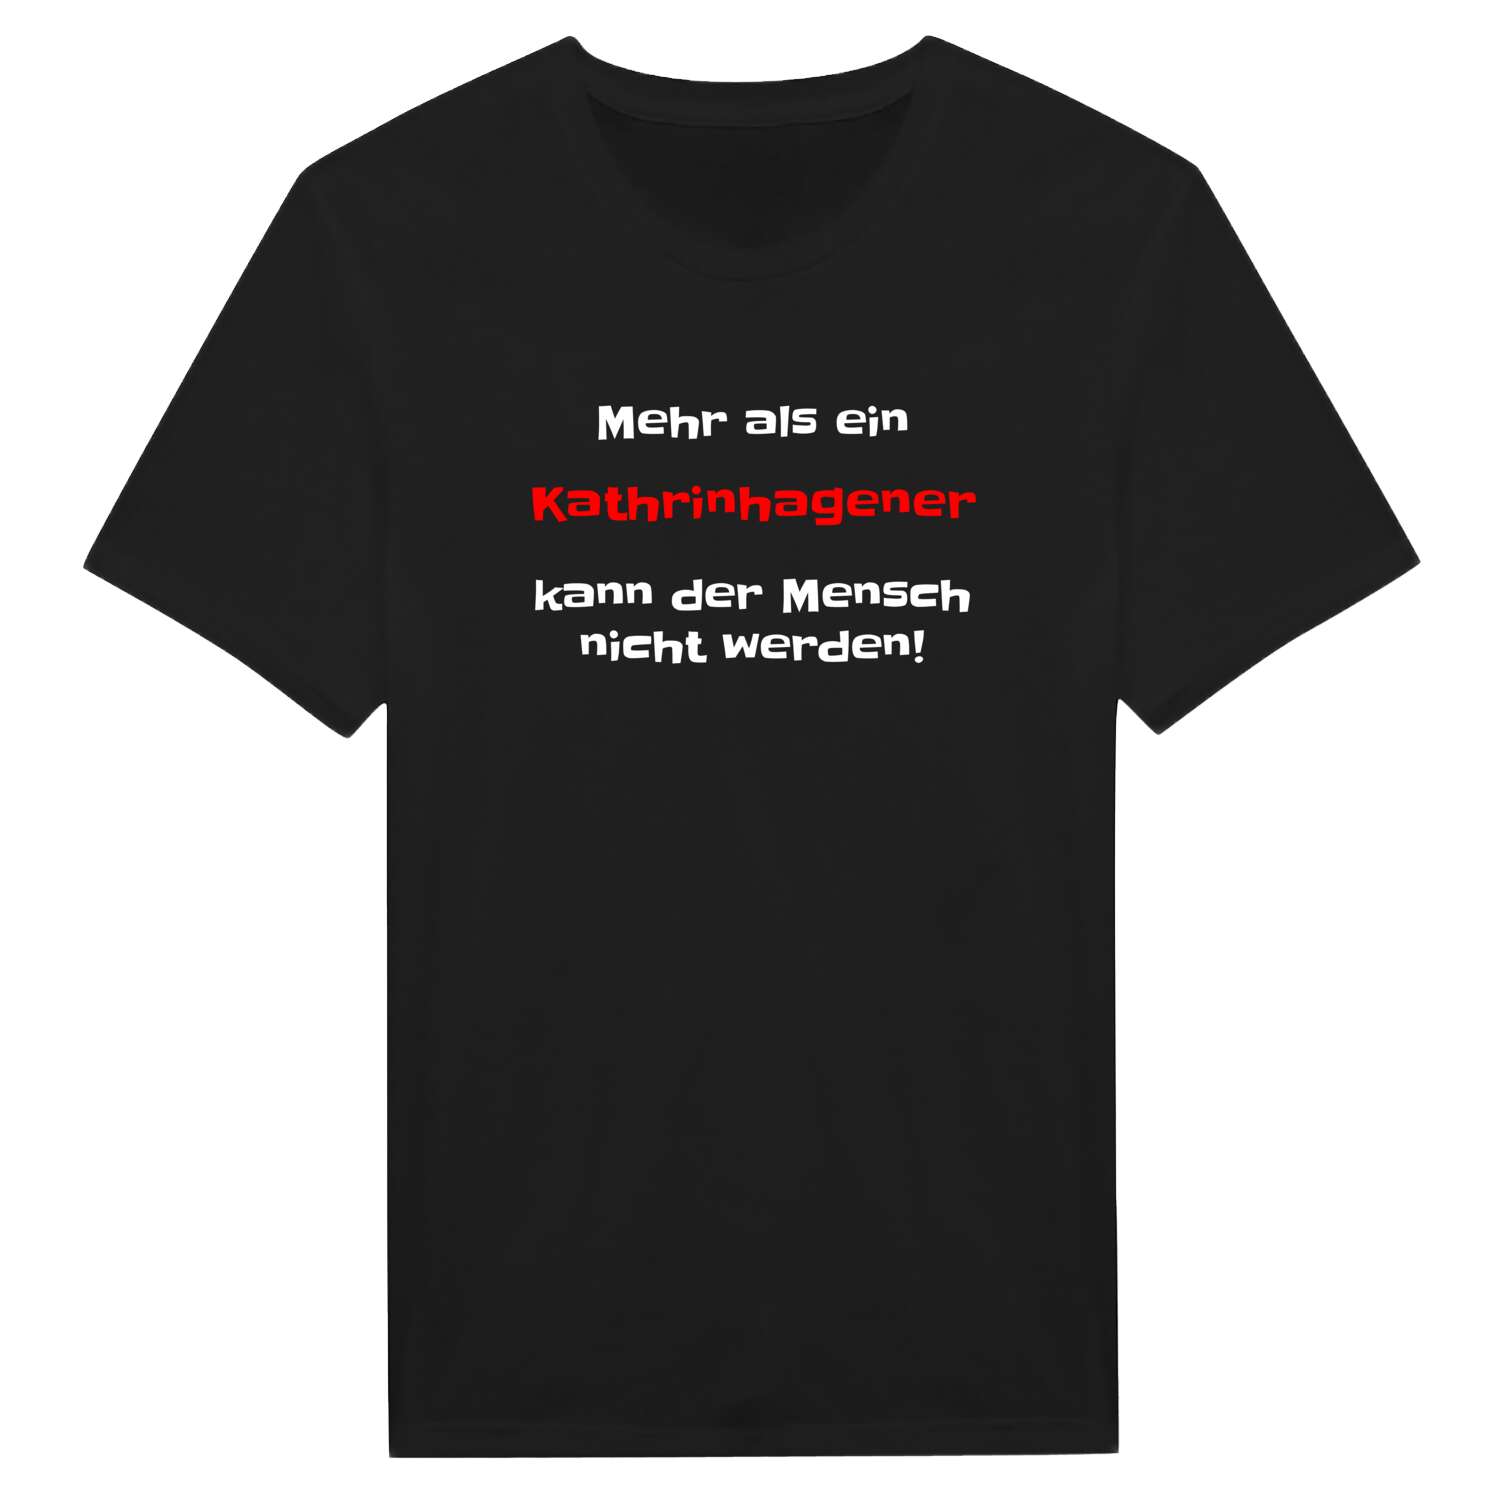 Kathrinhagen T-Shirt »Mehr als ein«